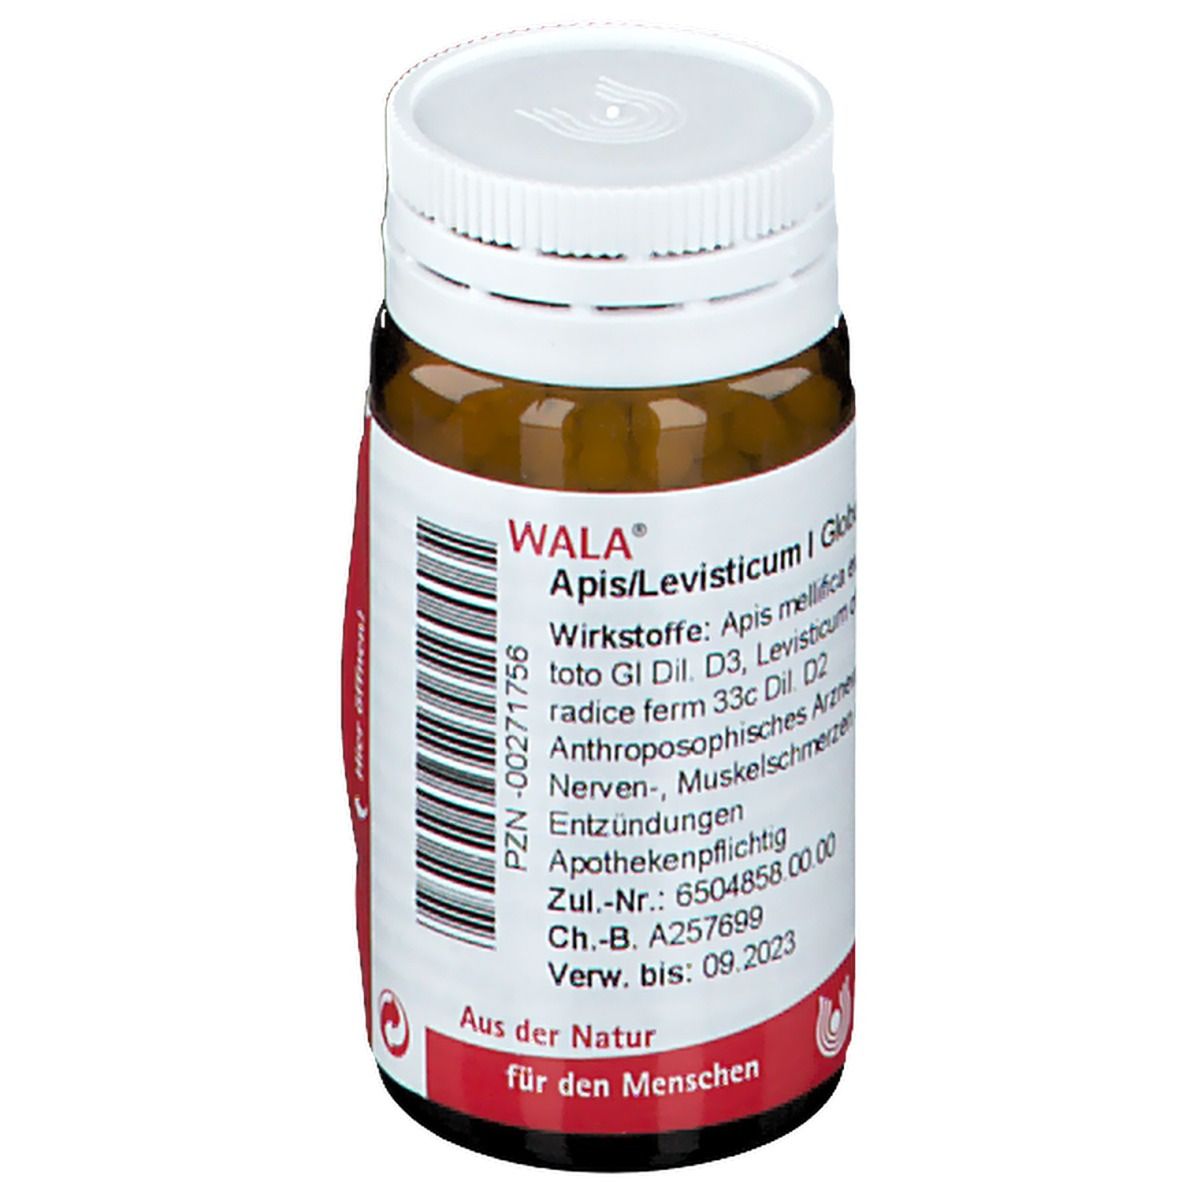 WALA® APIS/LEVISTICUM I Globuli